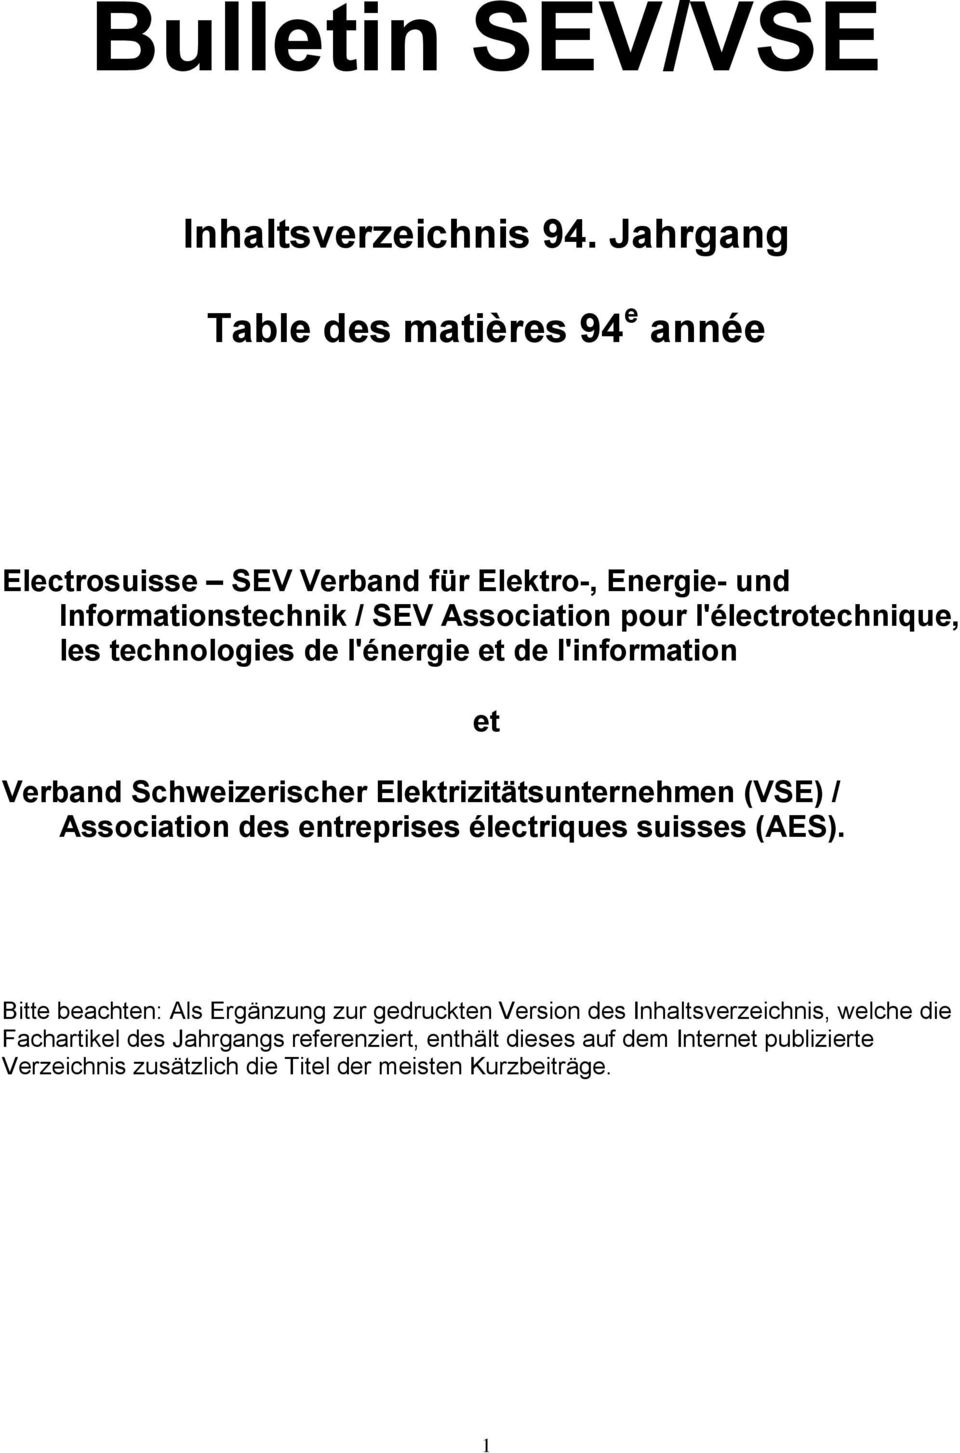 l'électrotechnique, les technologies de l'énergie et de l'information Verband Schweizerischer Elektrizitätsunternehmen (VSE) / Association des